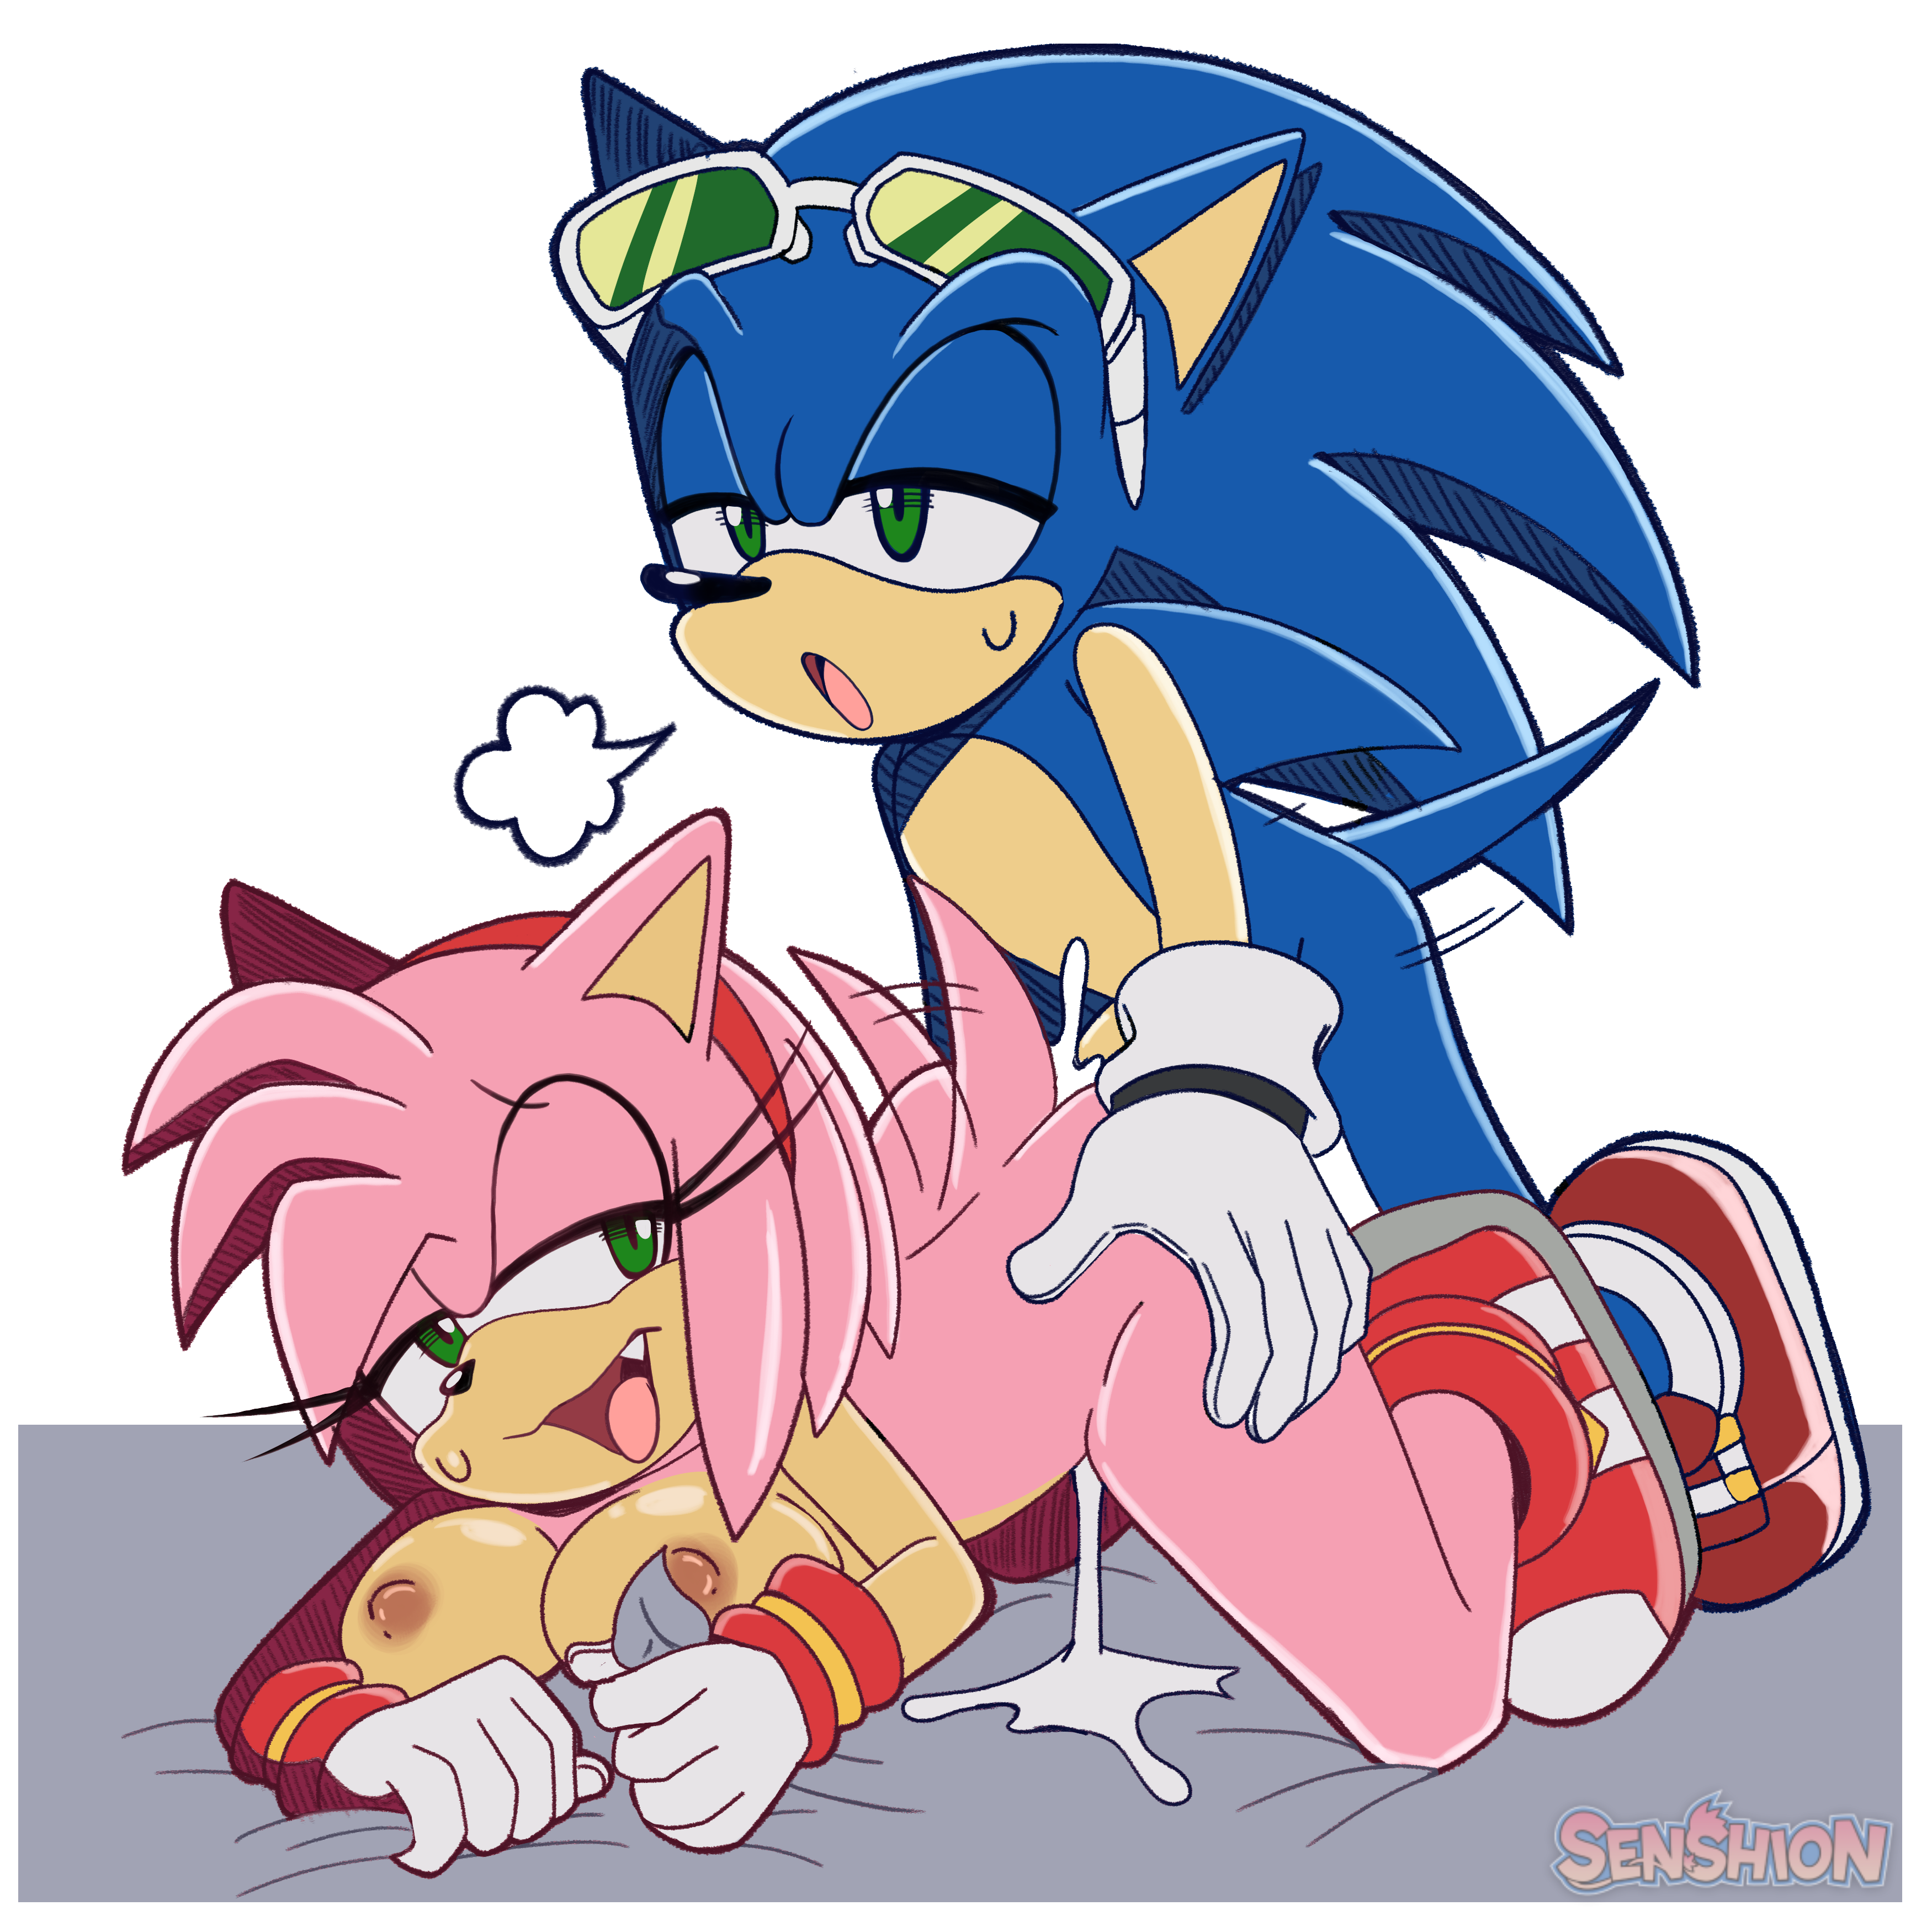 3500px x 3500px - Post 5223980: Amy_Rose edit senshion Sonic_Riders Sonic_the_Hedgehog  Sonic_the_Hedgehog_(series)